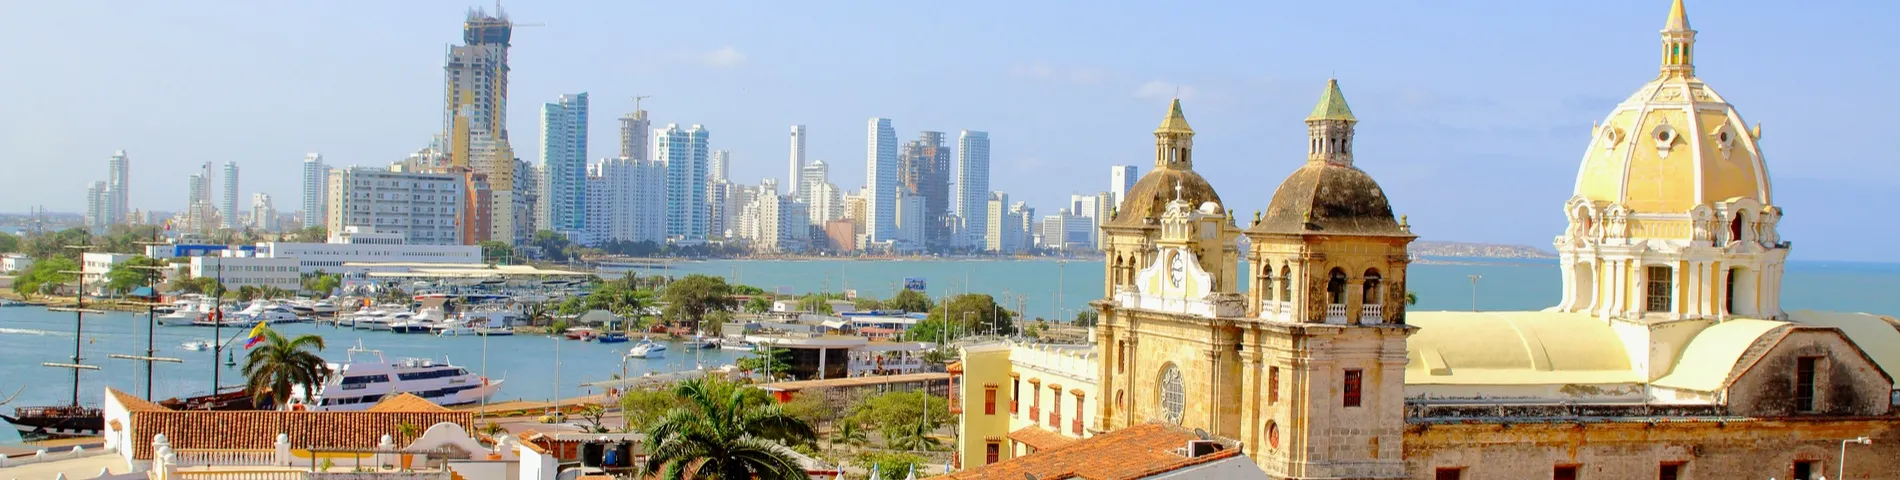 Cartagena - Curso general